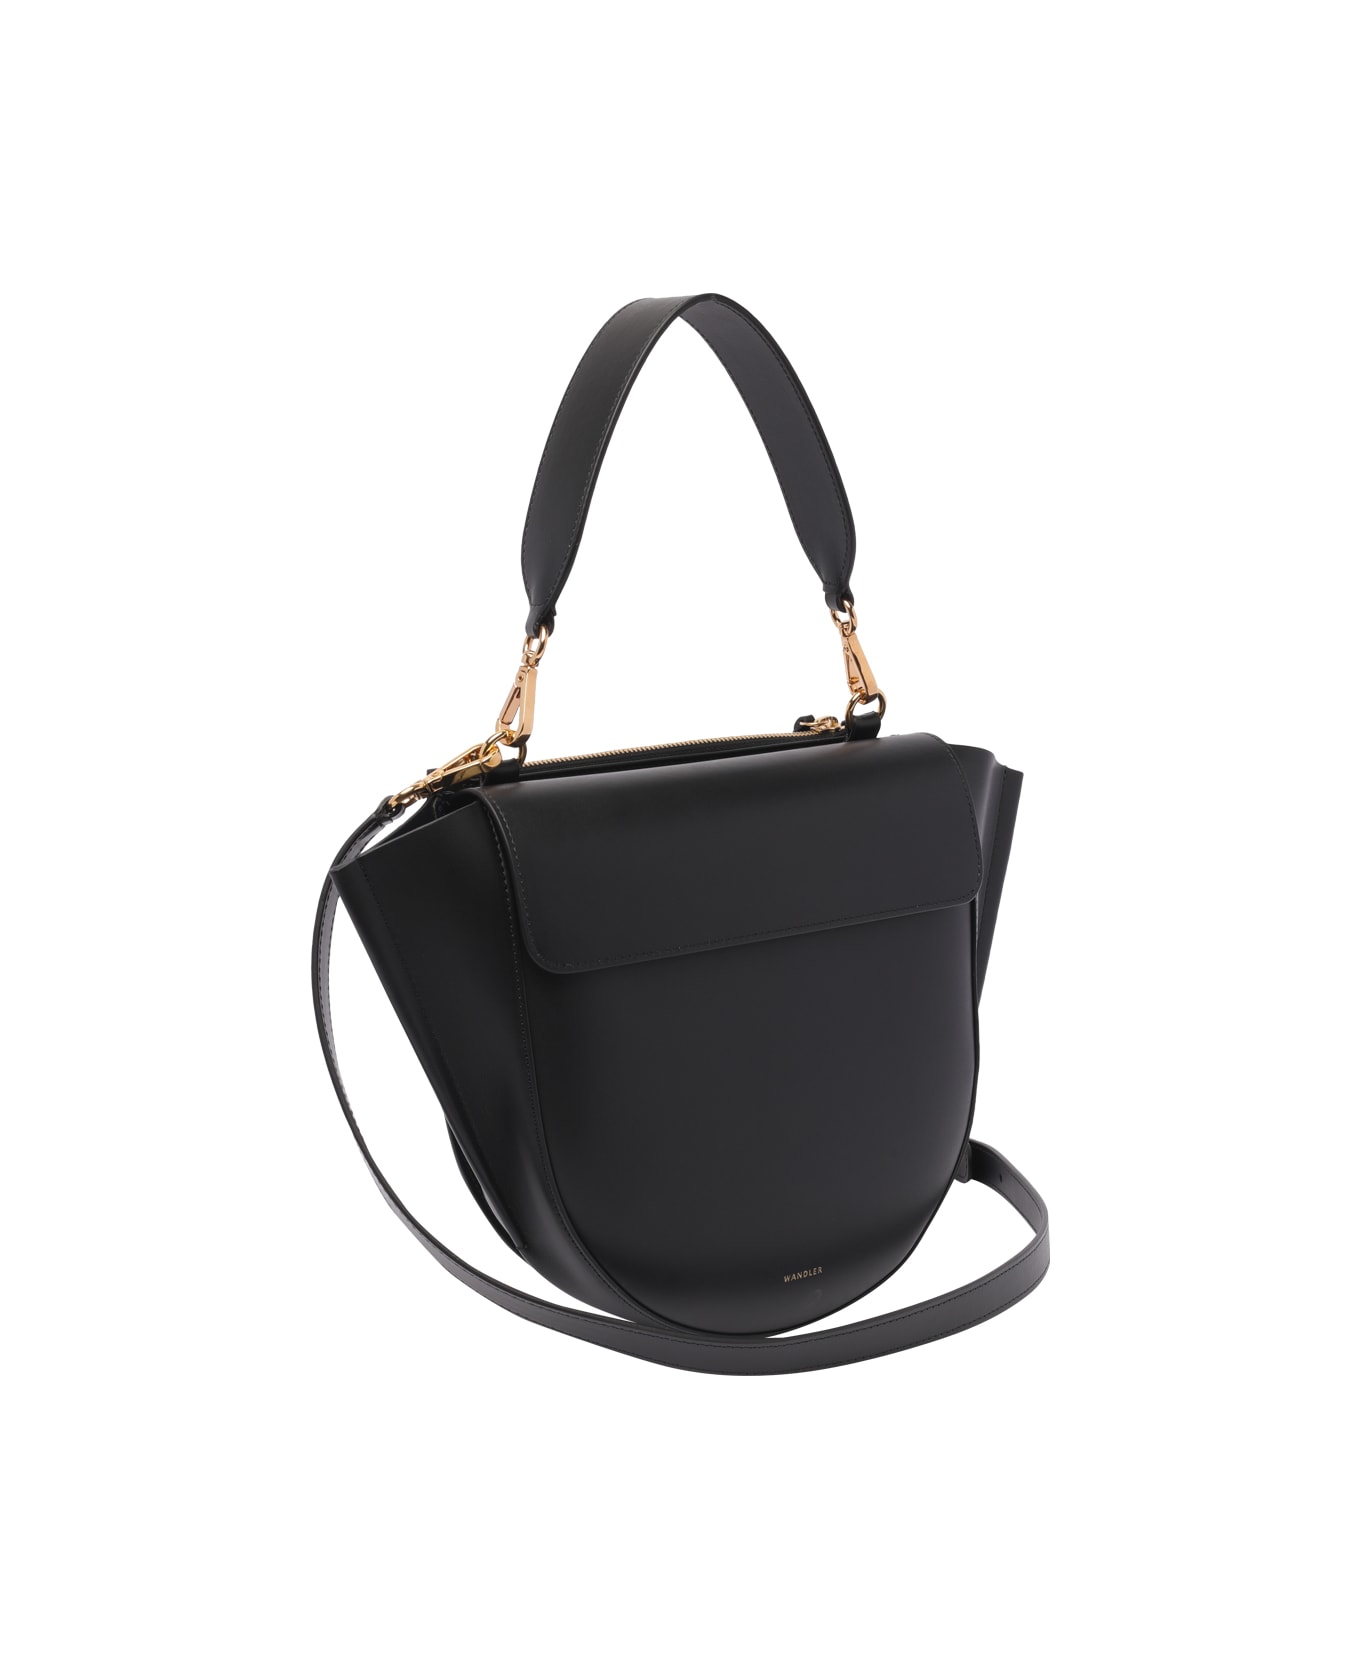 Wandler Medium Hortensia Handbag - Black